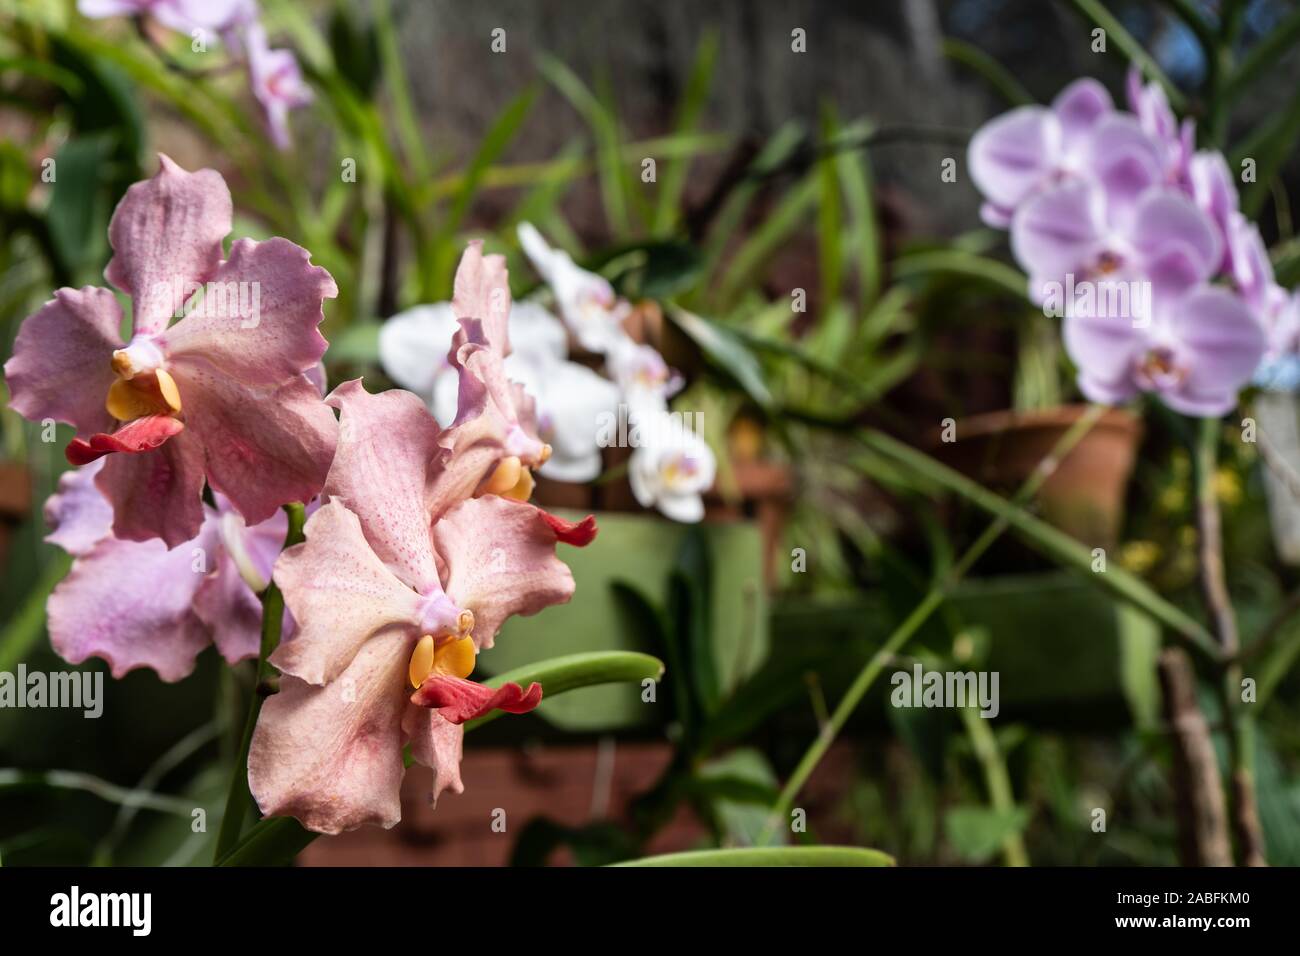 Pink vanda orchids in the botanical garden. Queen of vanda orchids Stock Photo